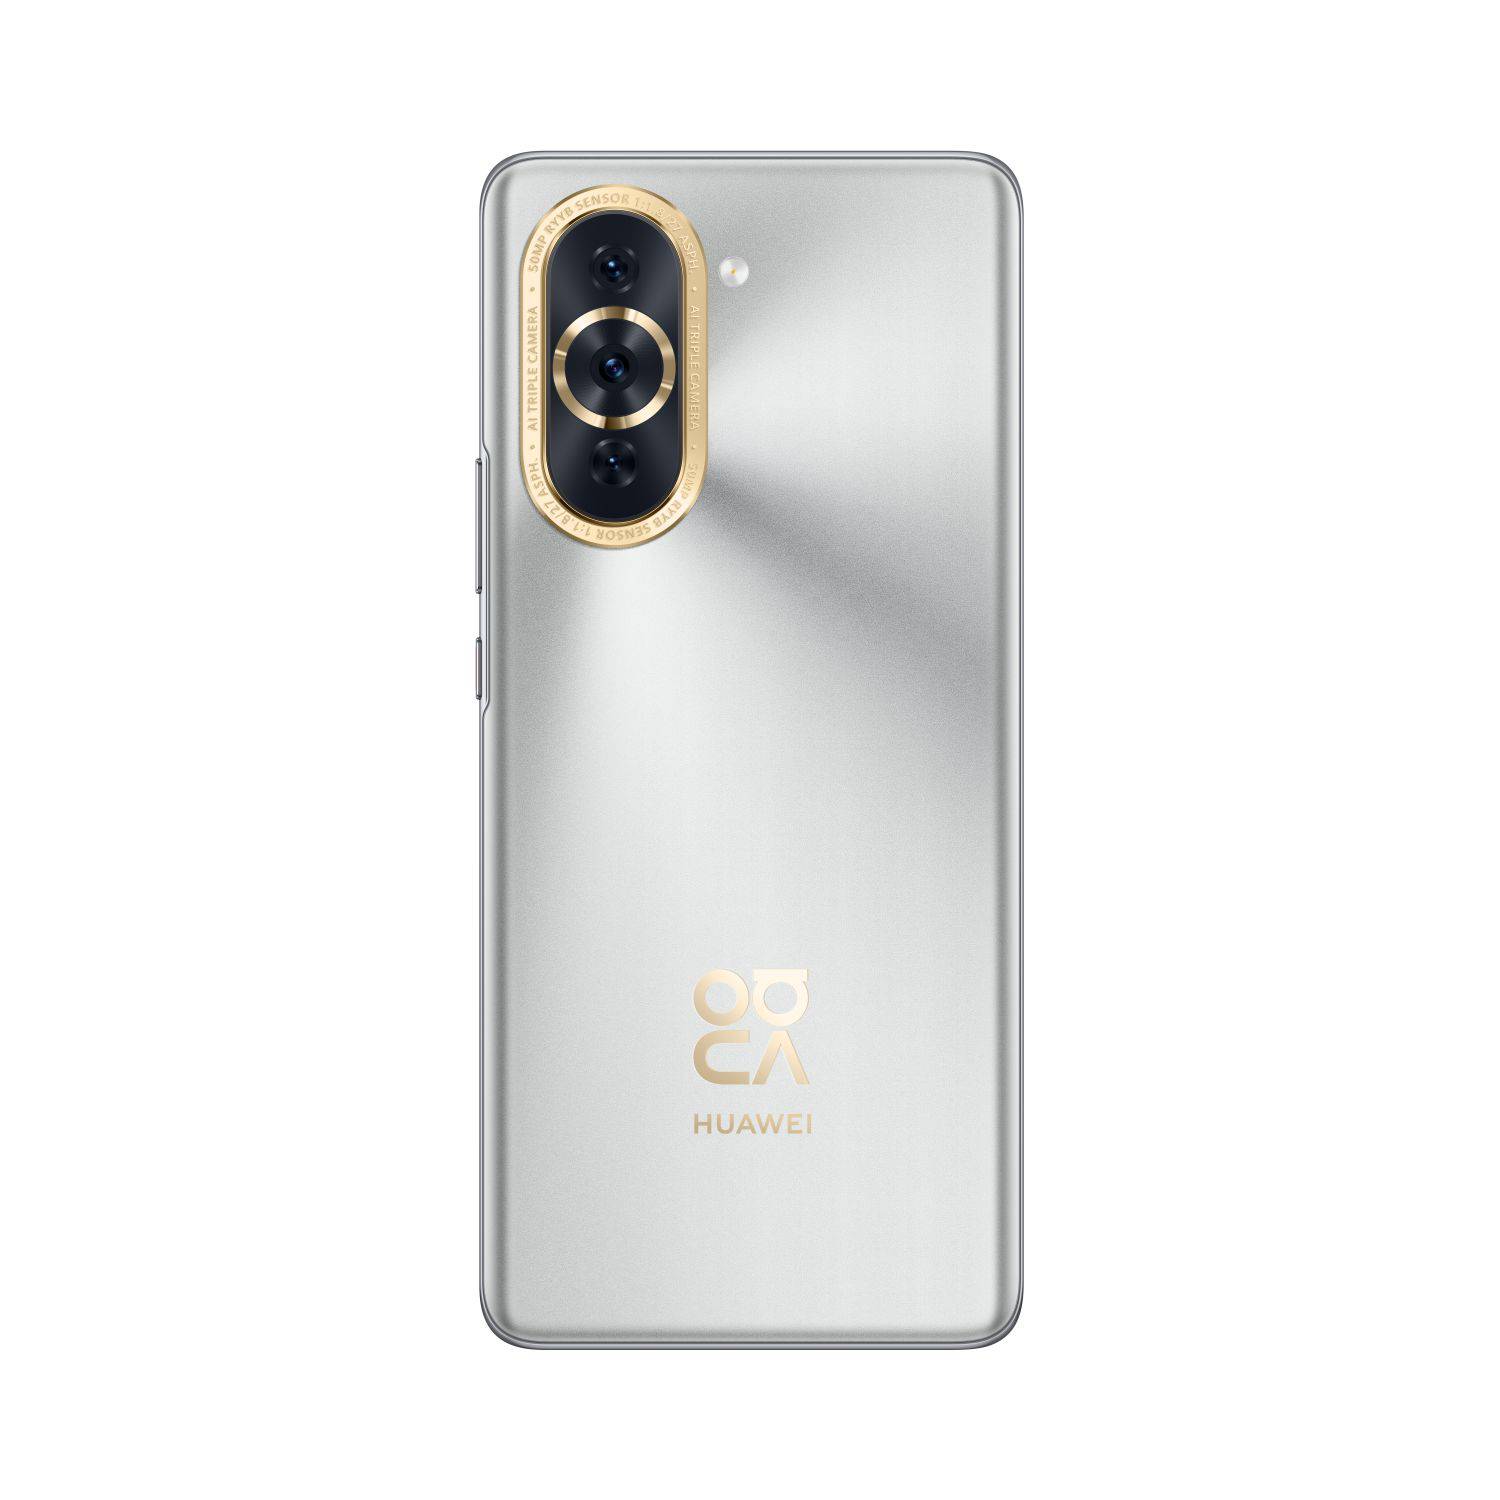 Huaweijev novi sat sad mjeri i vaš tlak, a Nova 10 telefon ima suludo snažnu prednju kameru